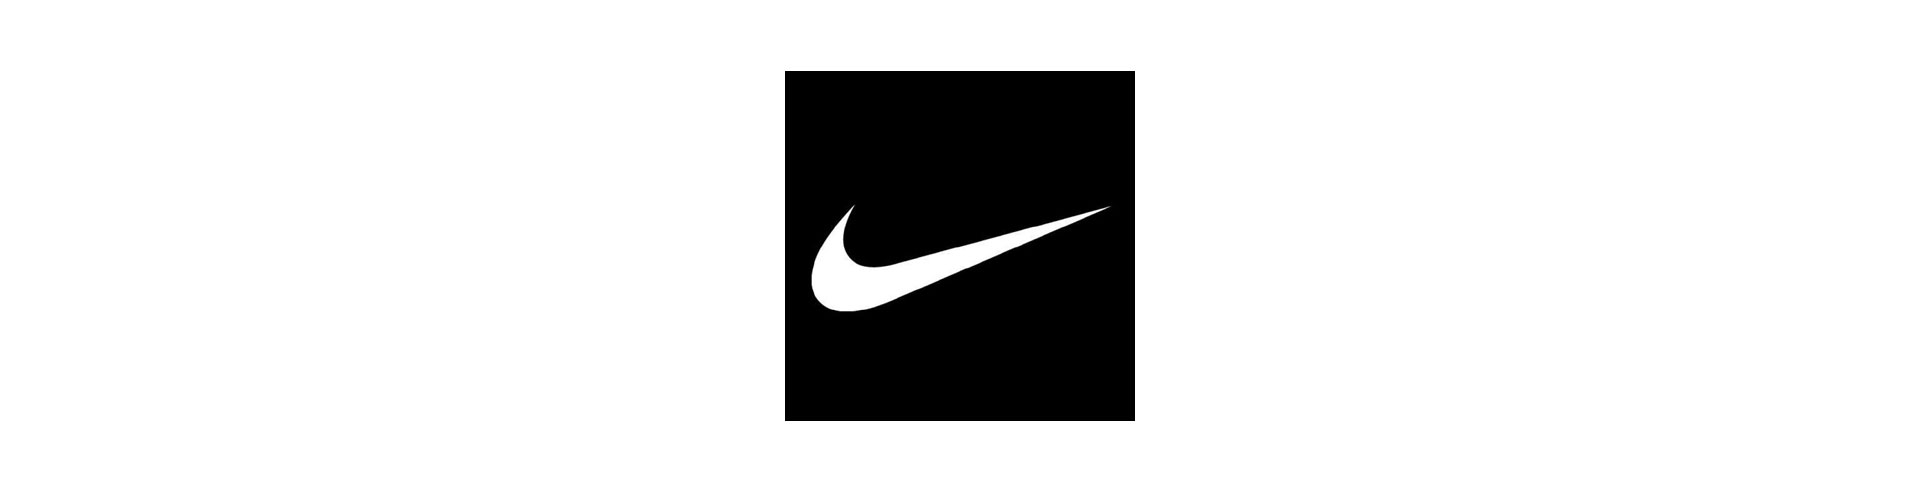 Lo Swoosh, il marchio Nike